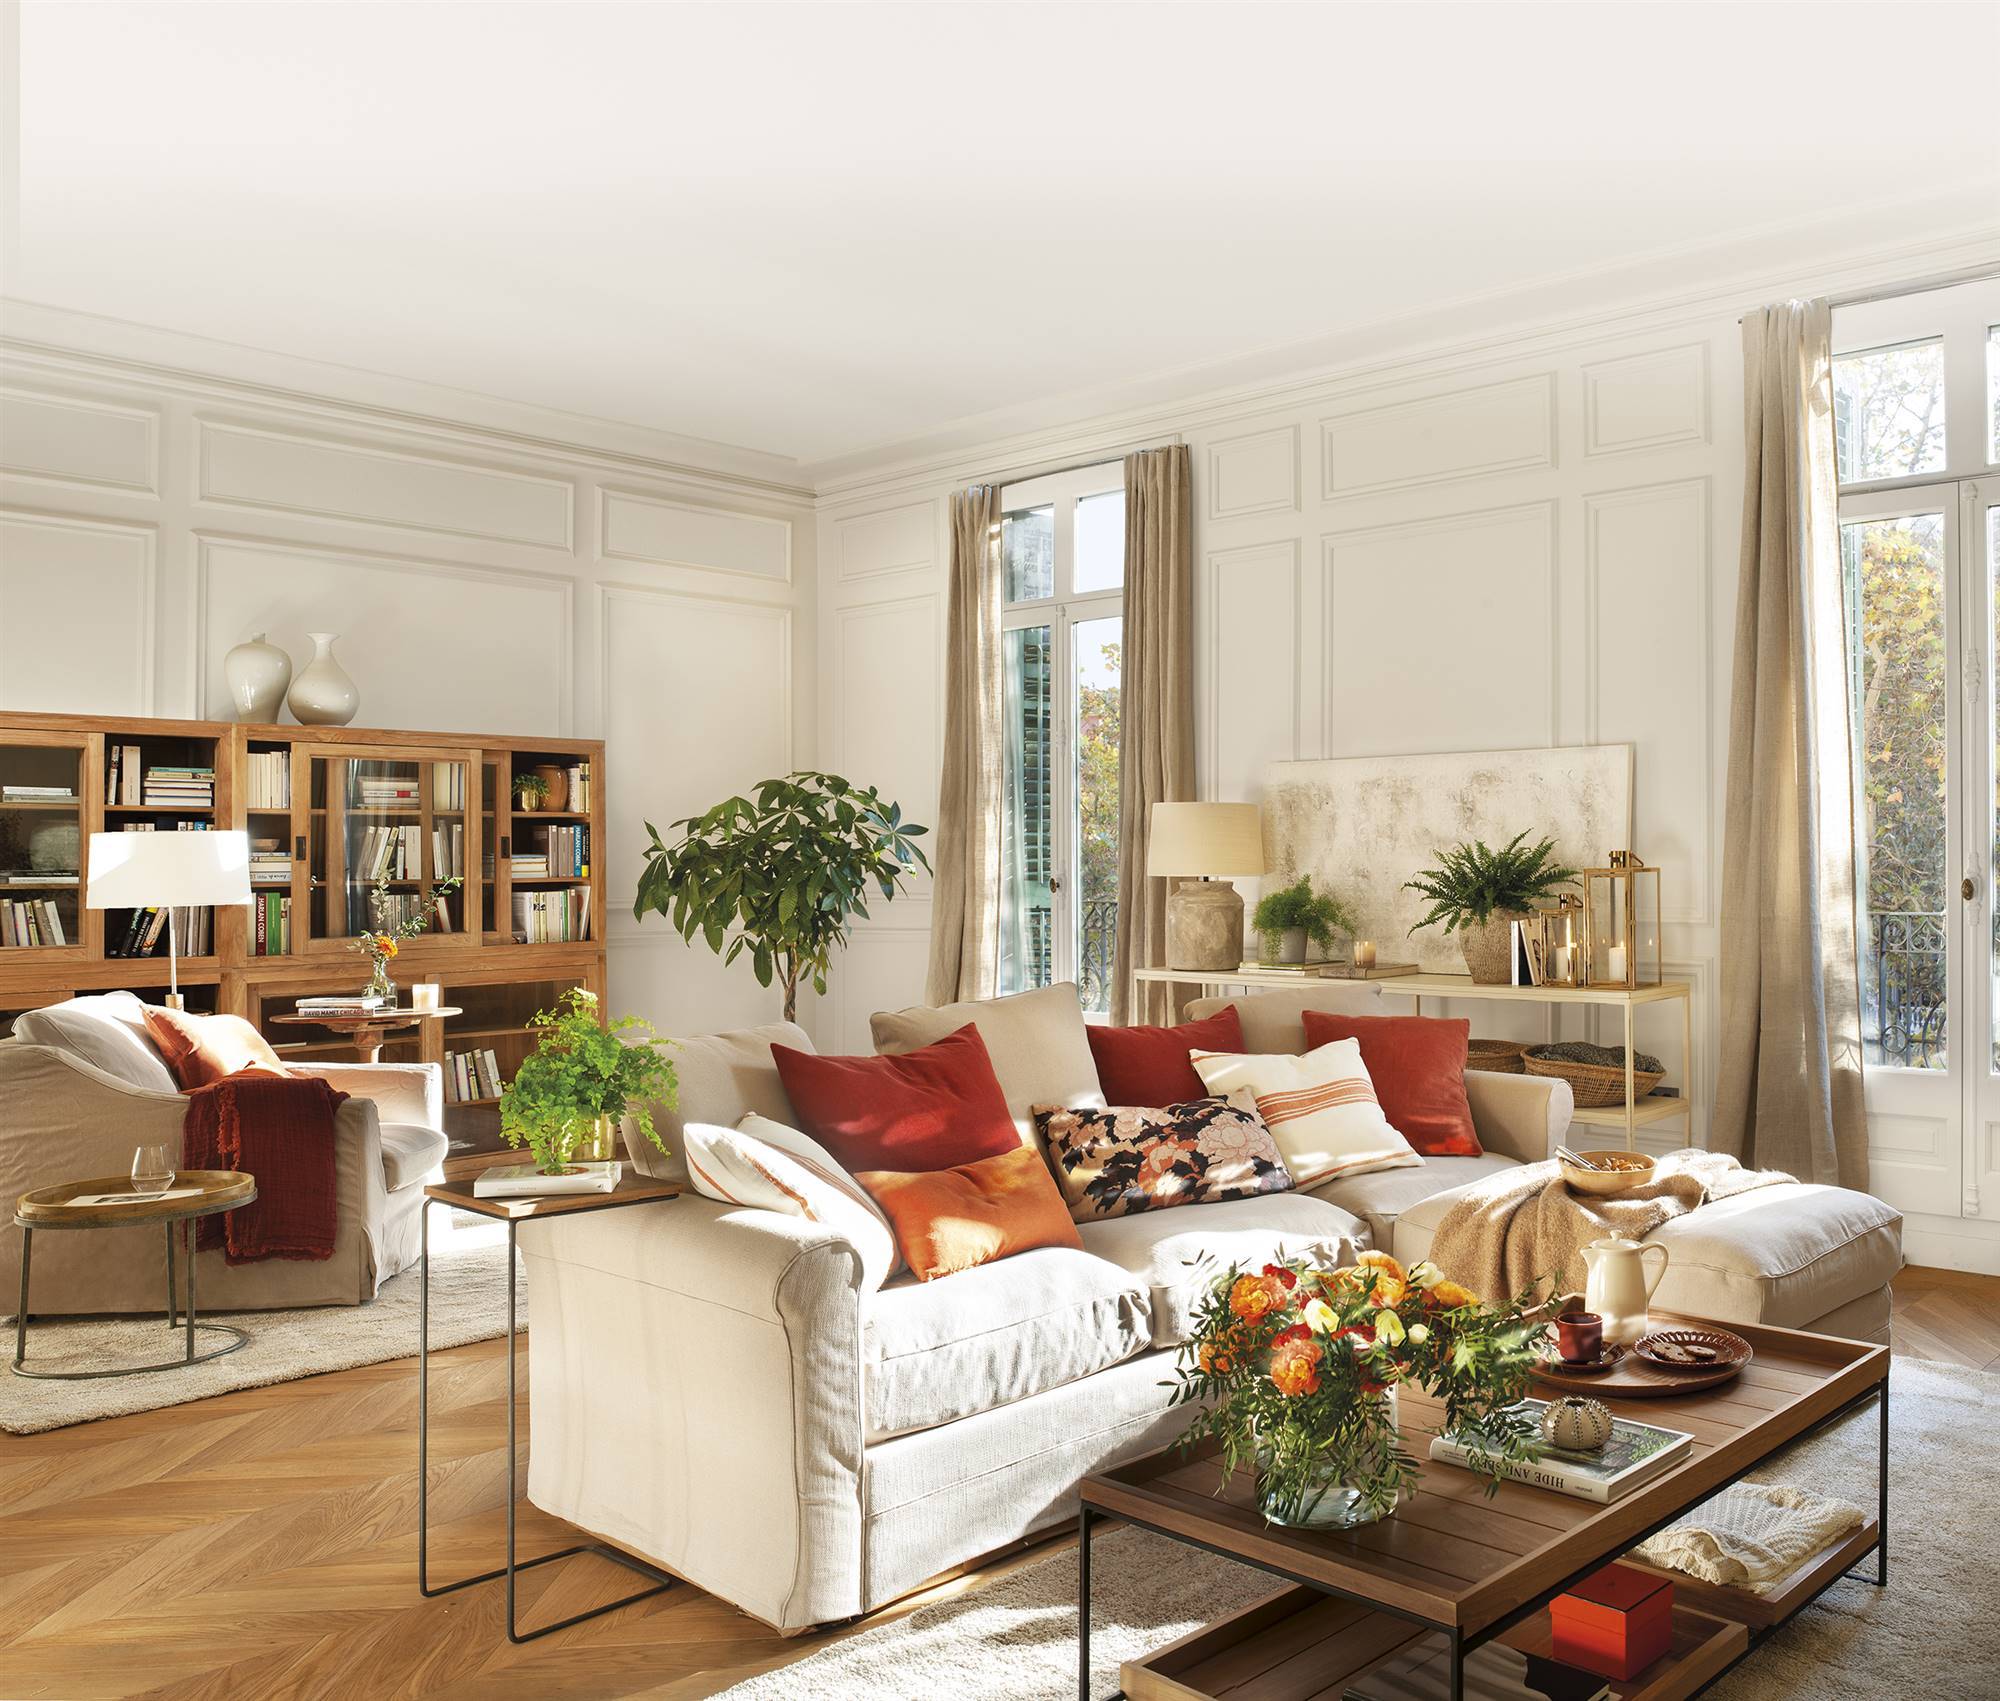 Salón con molduras en las paredes, sofás de color beige y muebles de madera. 